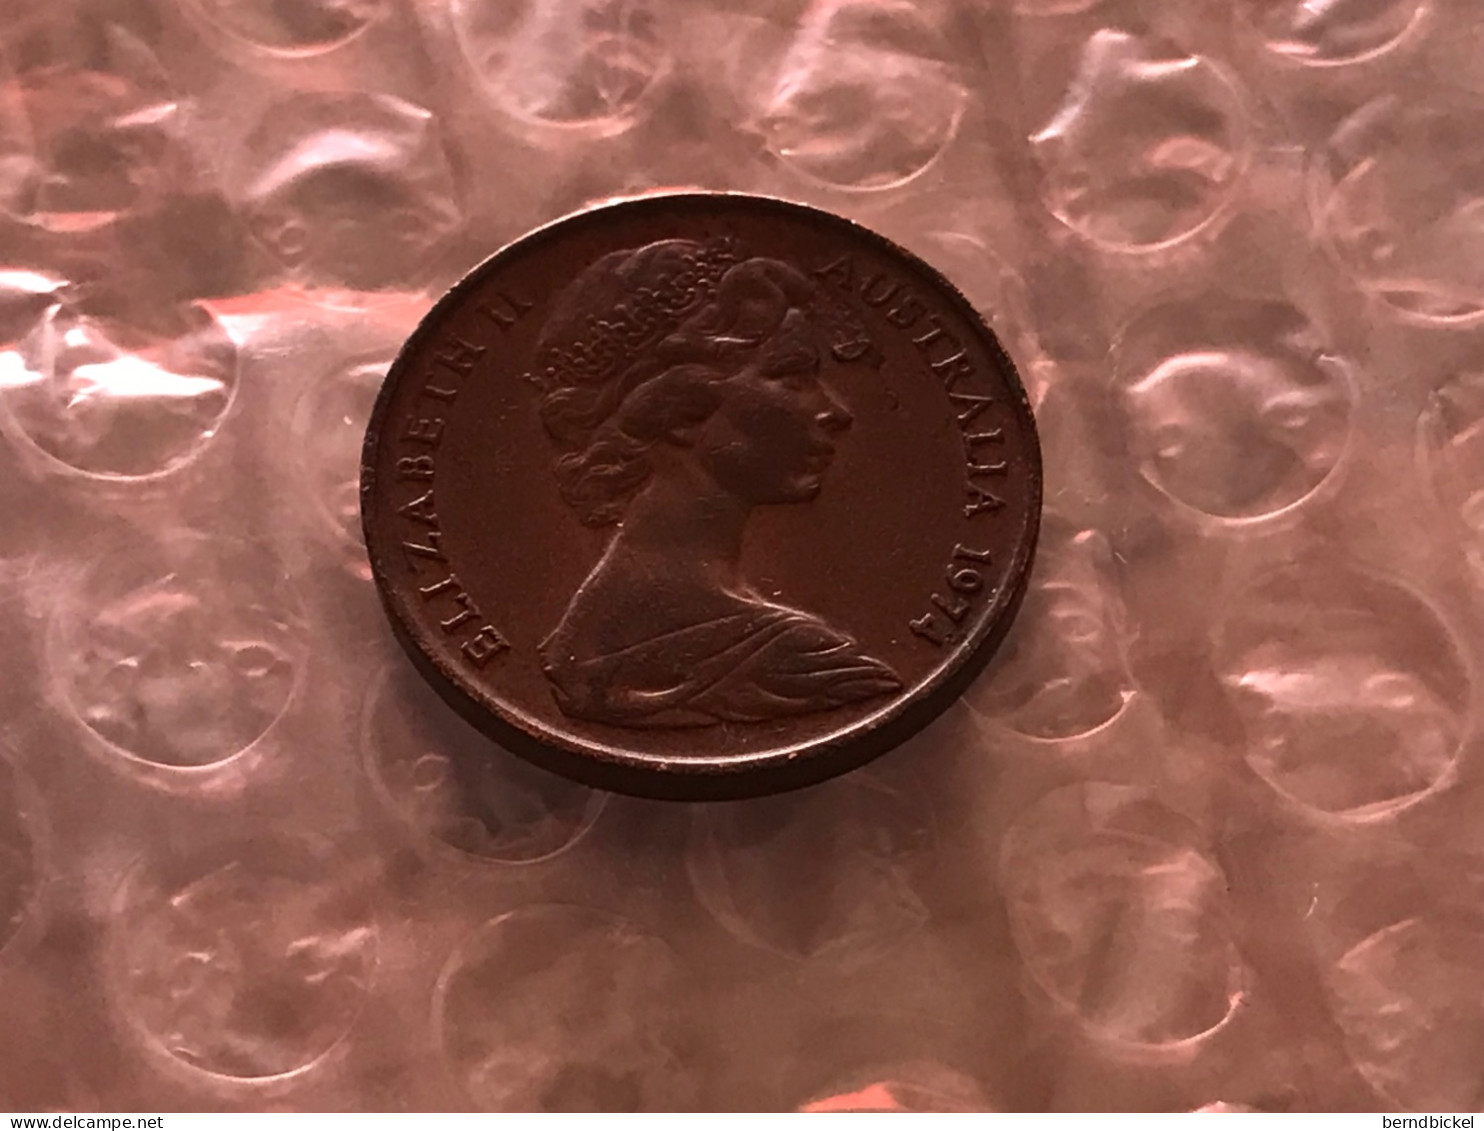 Münze Münzen Umlaufmünze Australien 2 Cents 1974 - 2 Cents